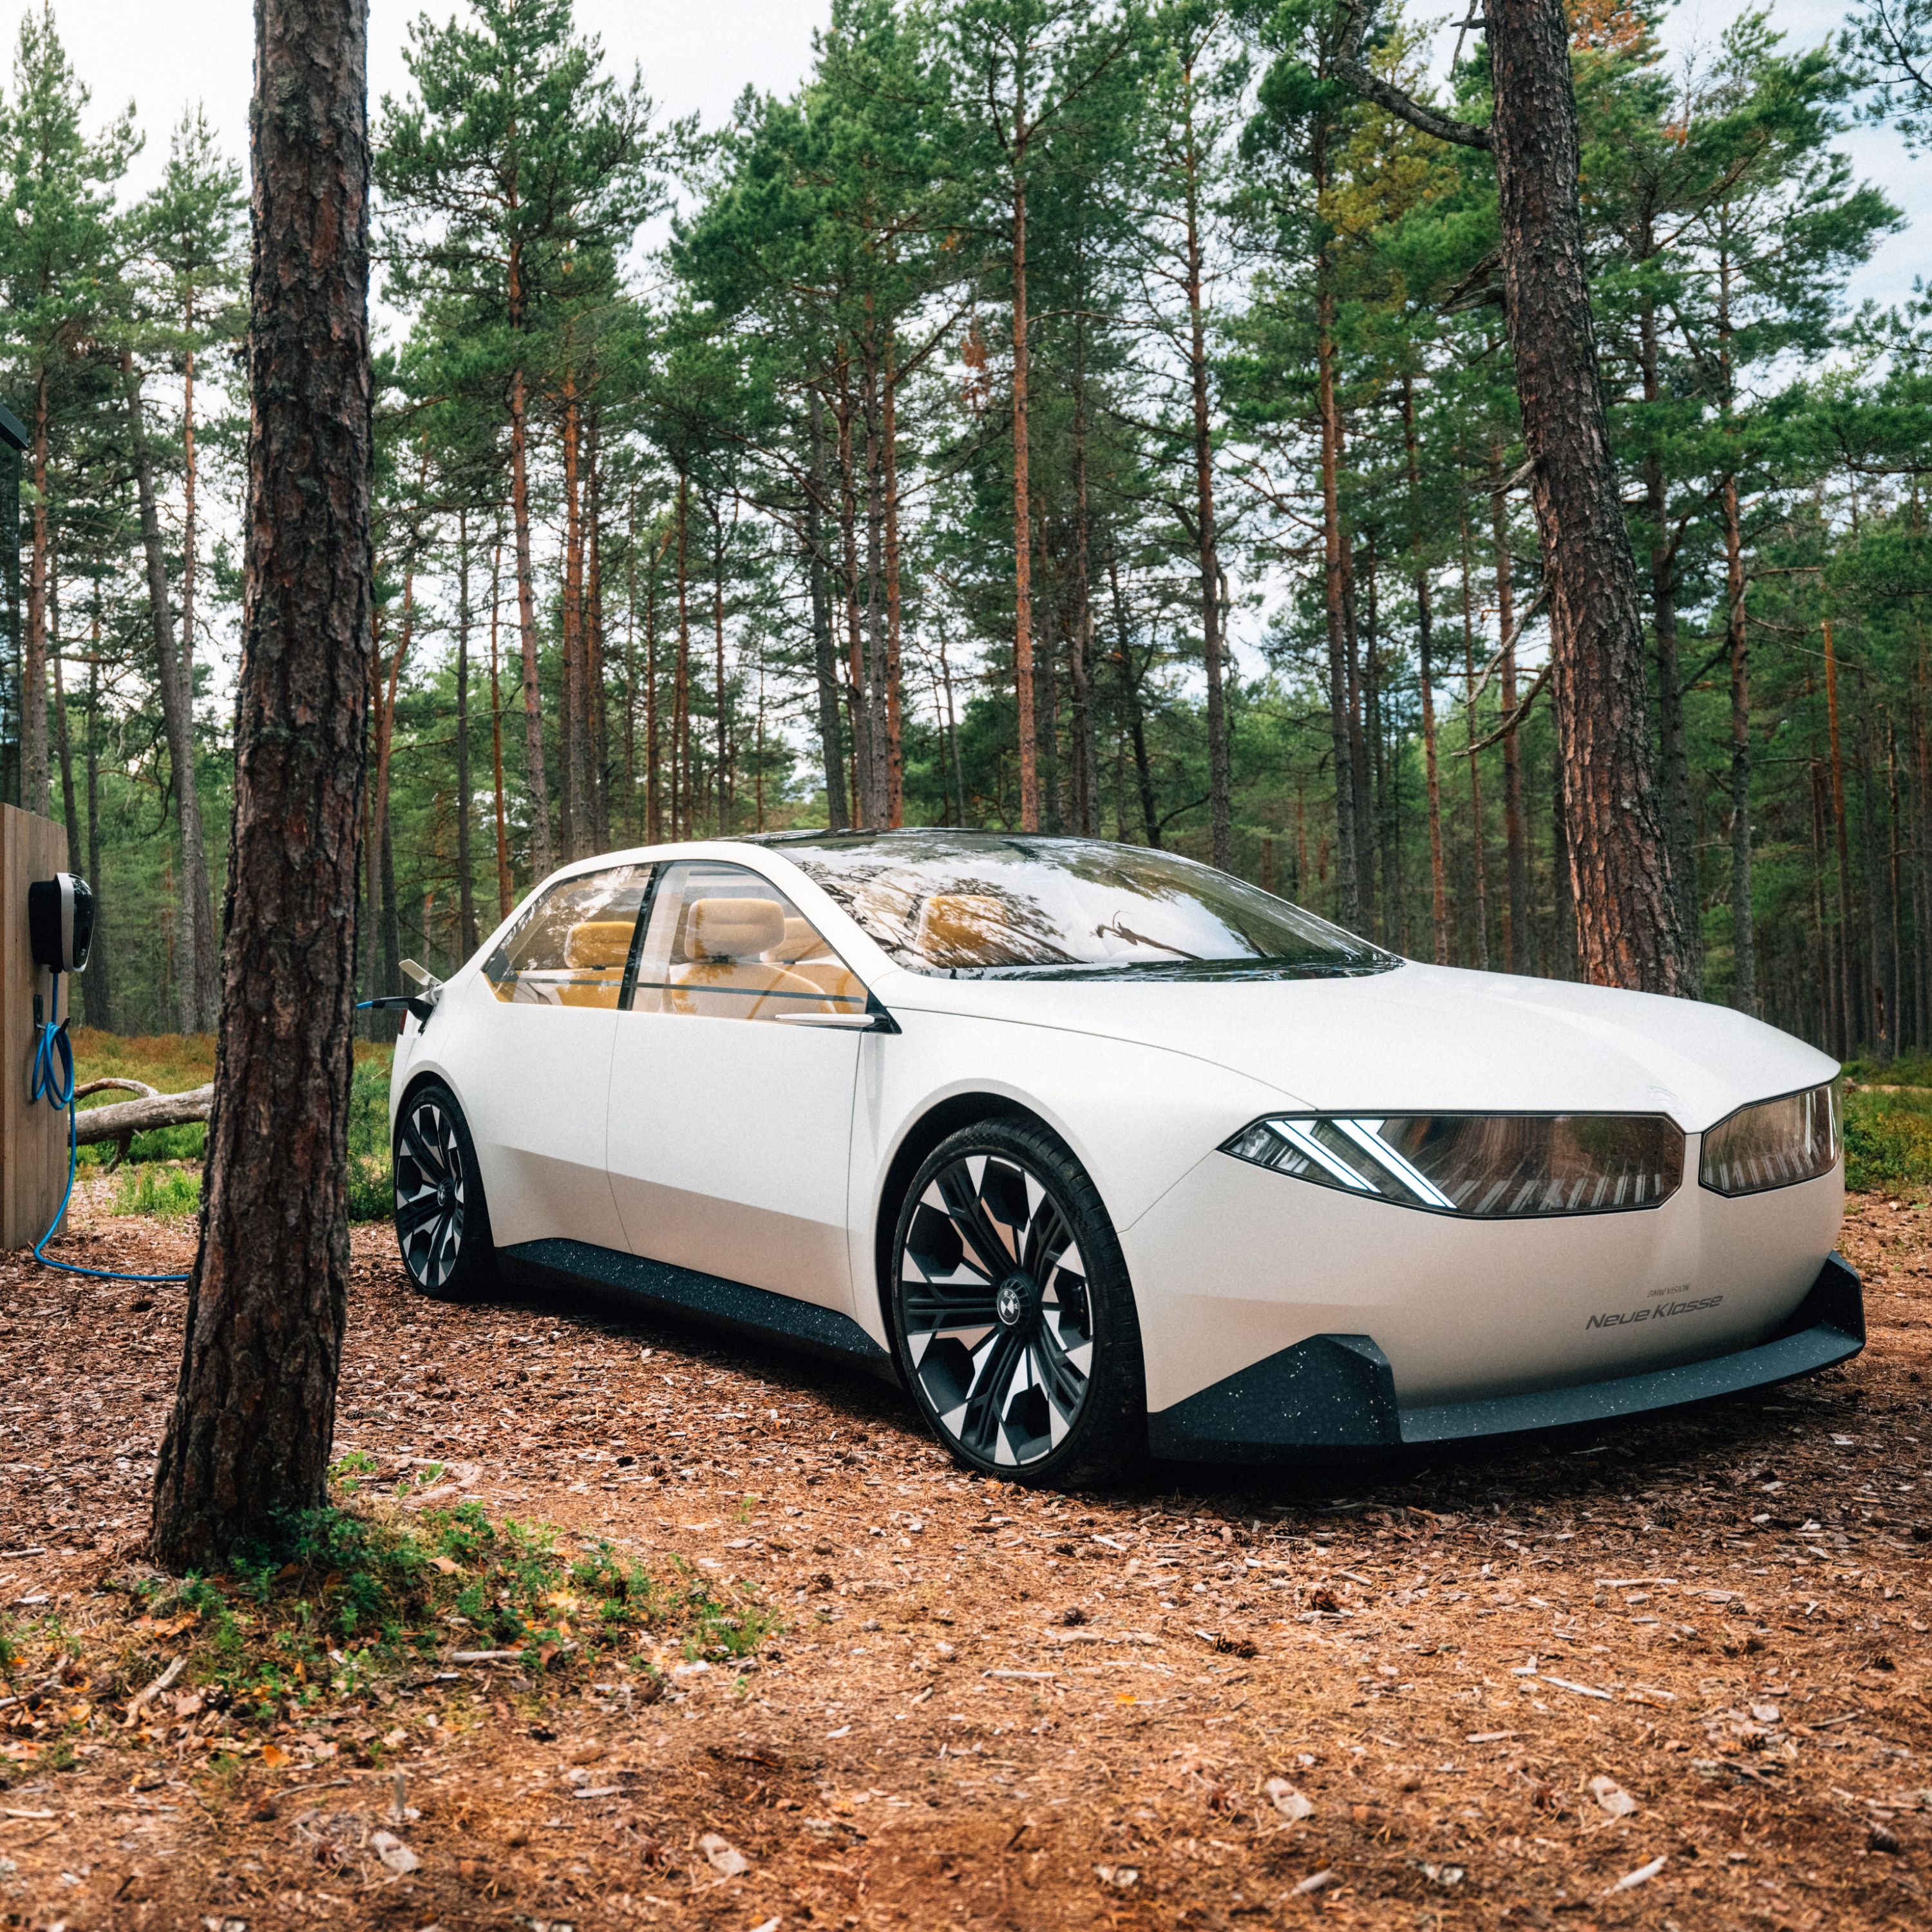 BMW Vision Neue Klasse samochód koncepcyjny 2023 wygląd zewnętrzny widok z boku 2/3 podczas jazdy w lesie